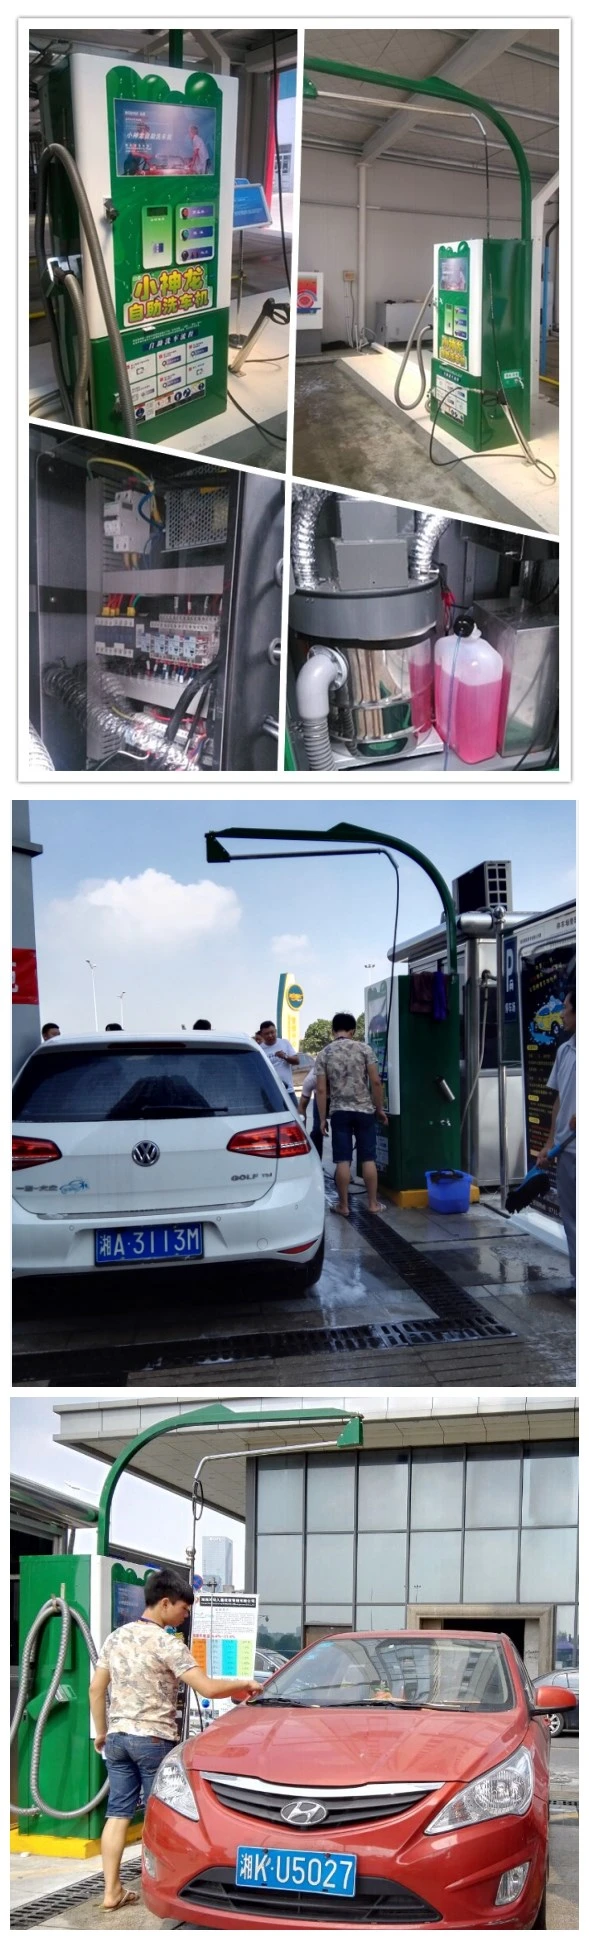 Self Wash Car Wash Equipment for Self Service Car Wash Shampoo